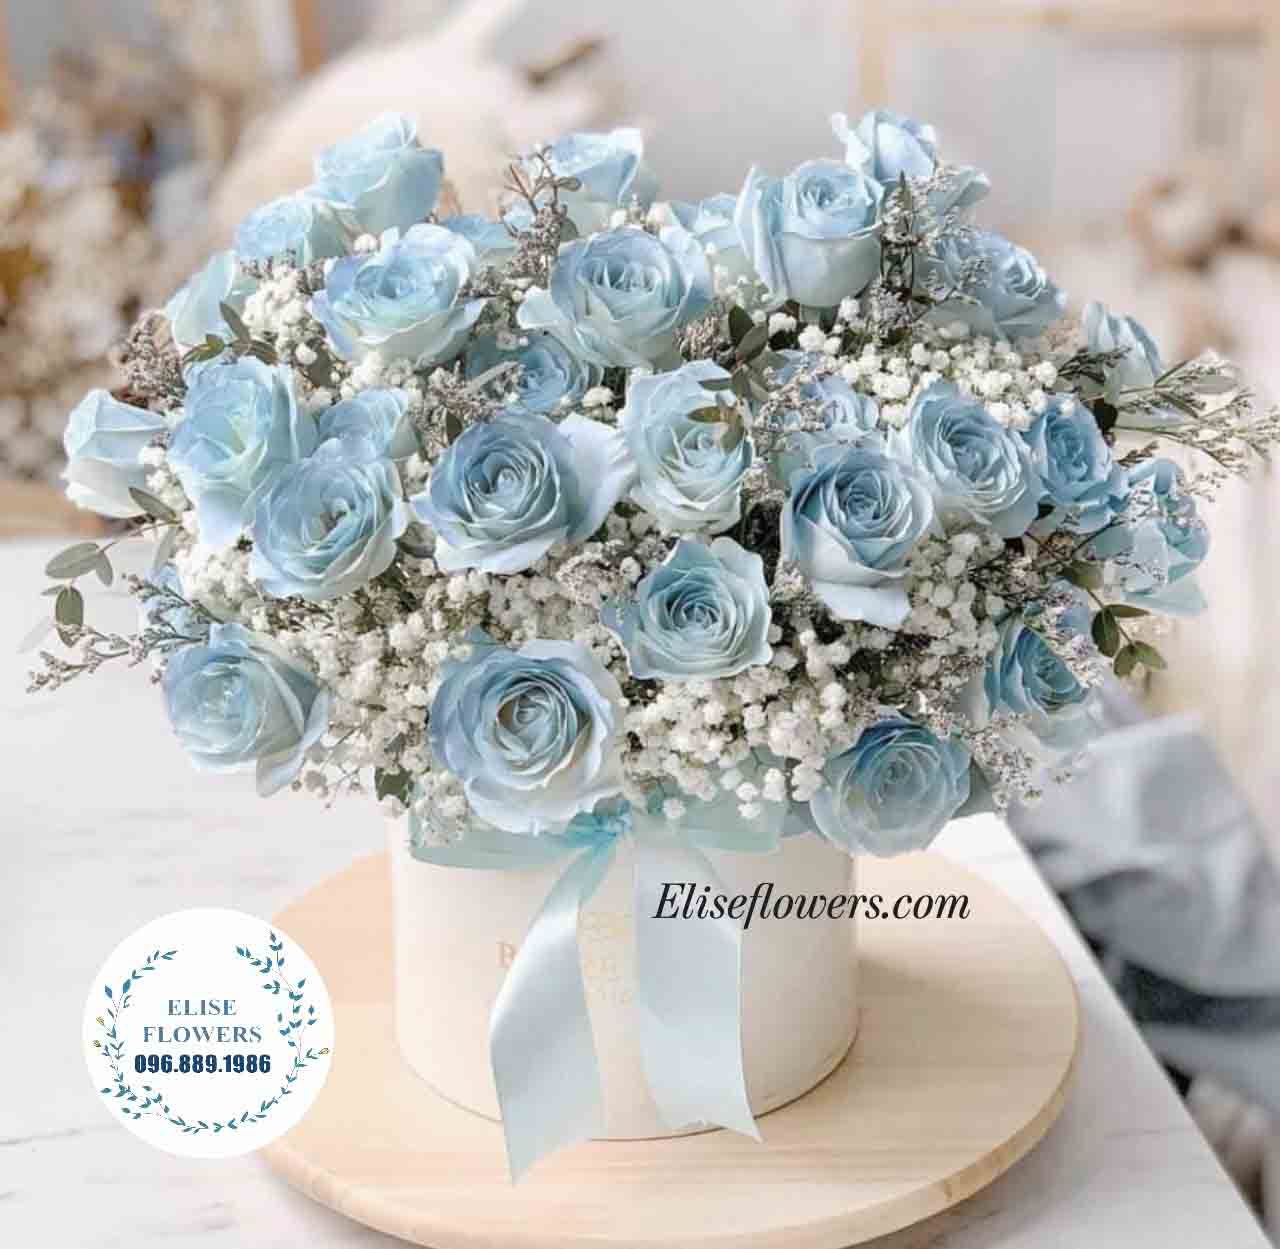 Lẵng hoa/hộp hoa màu xanh đẹp sang trong tặng sinh nhật ông xã, bà xã tại Eliseflowers.com